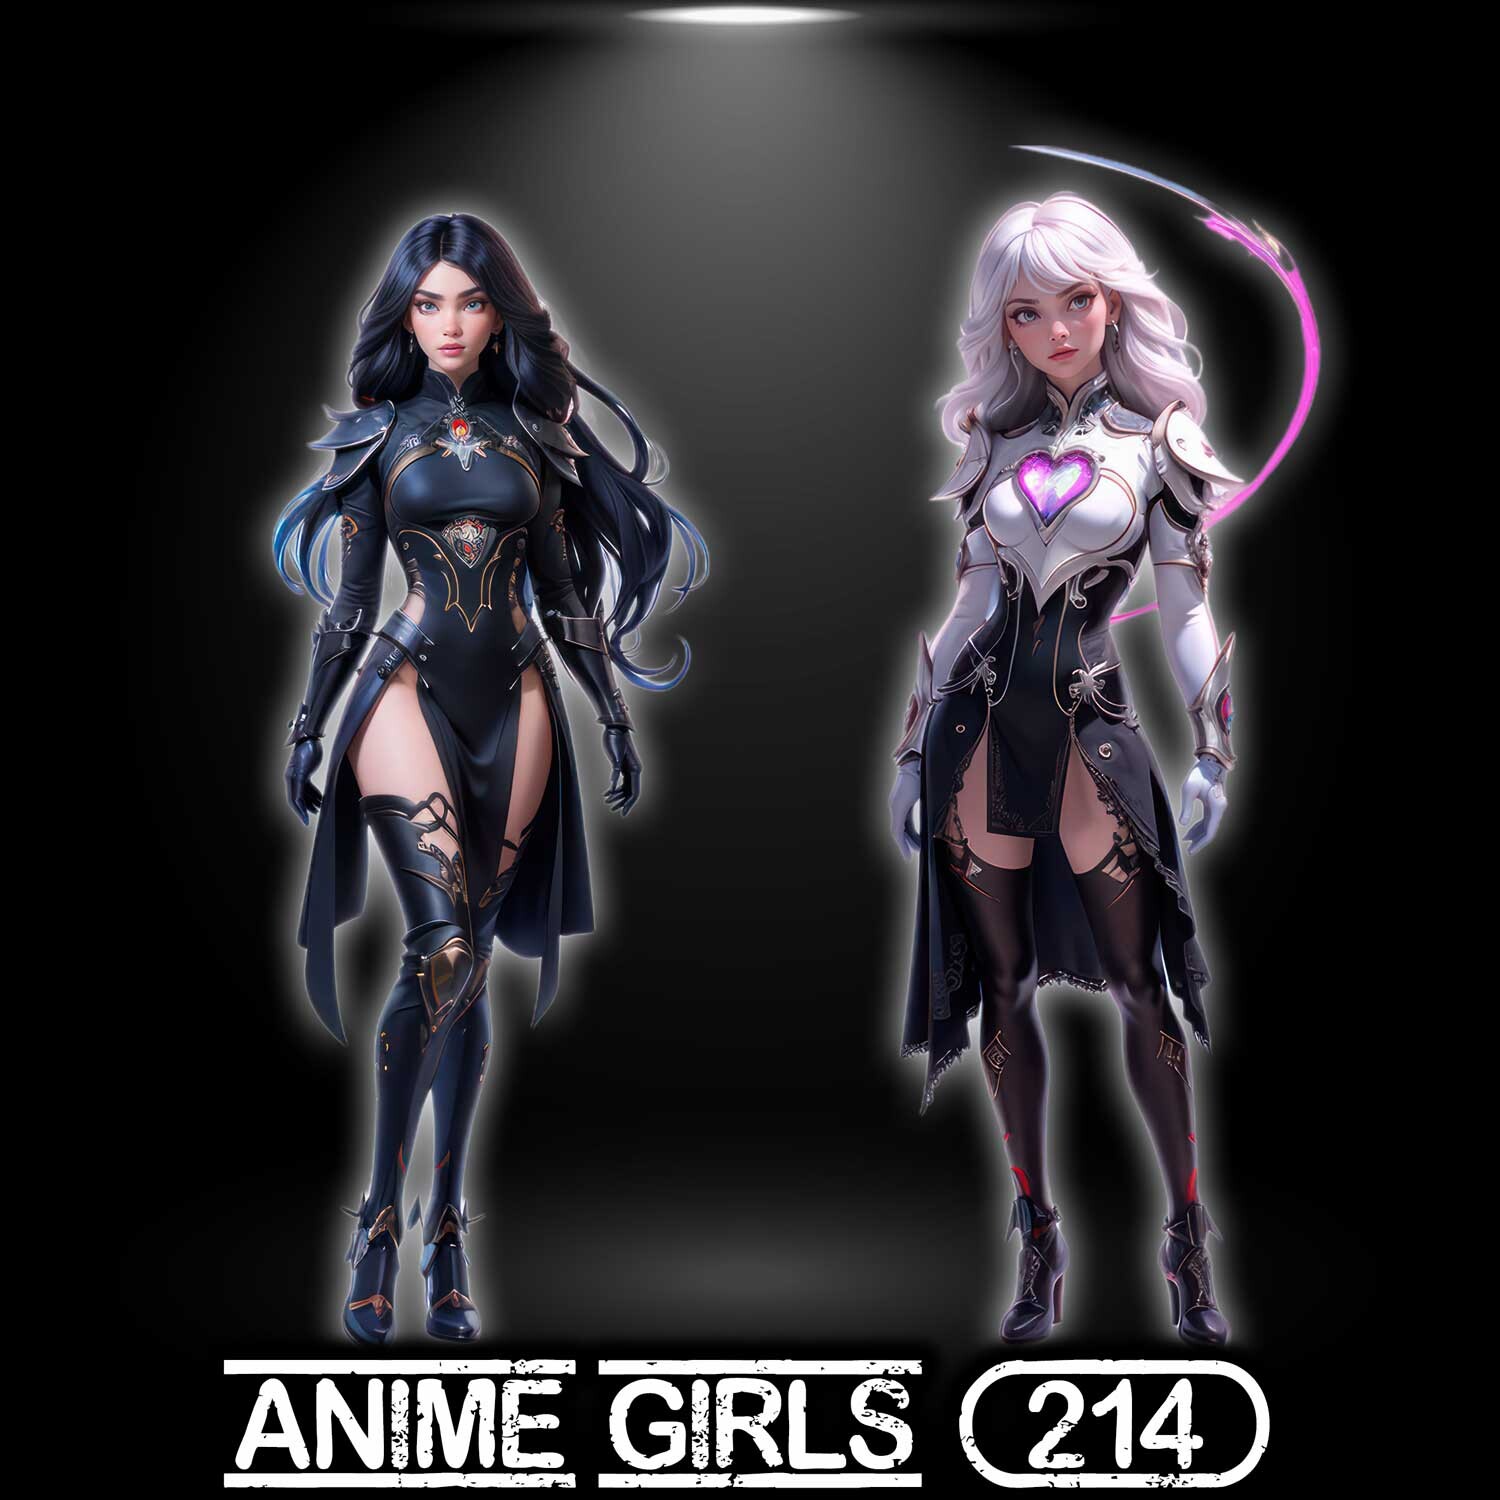 ArtStation - Design Characters Anime Girl